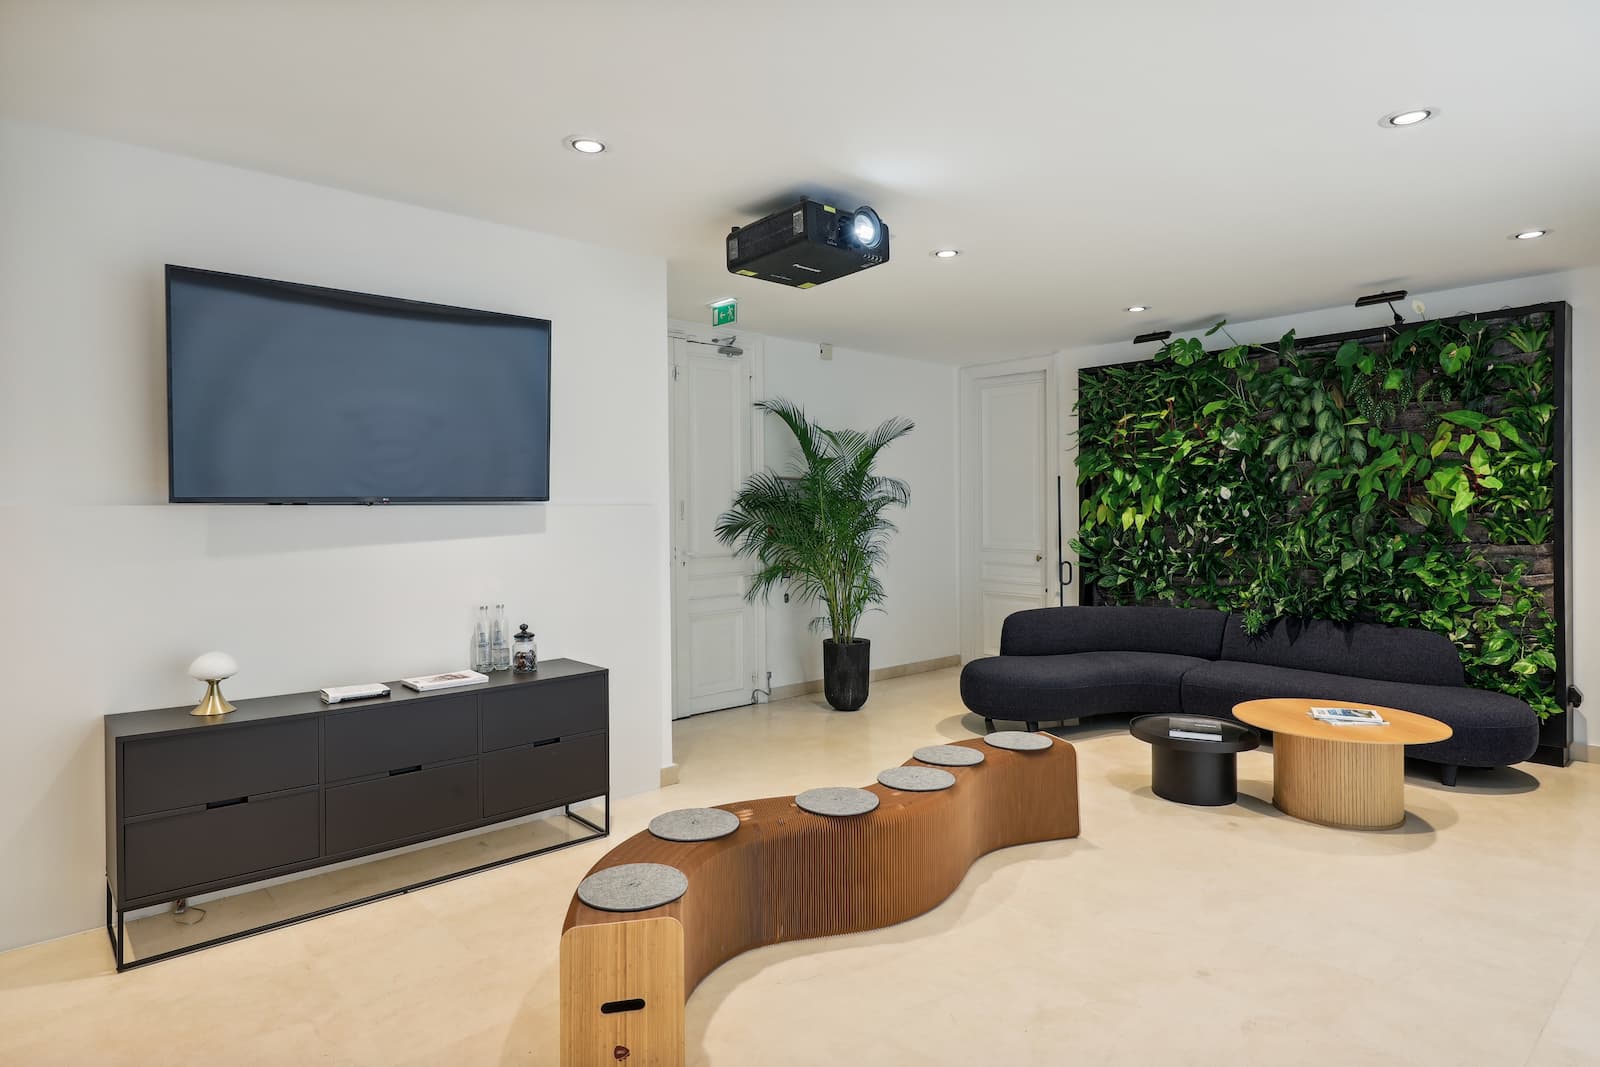 Mur végétal, espace attente, assise design, projecteur et mur connecté